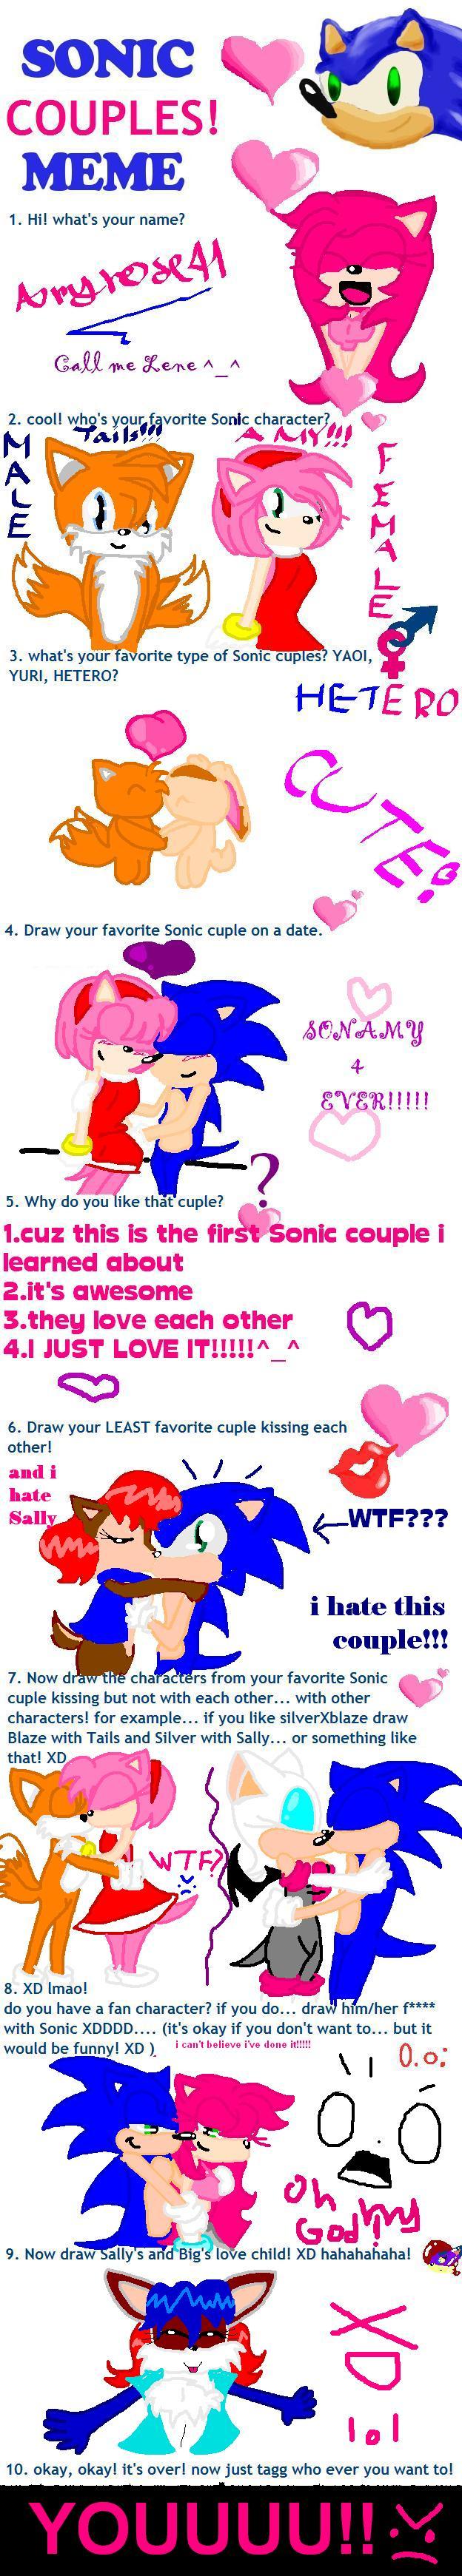 Art Sonic Couples Meme